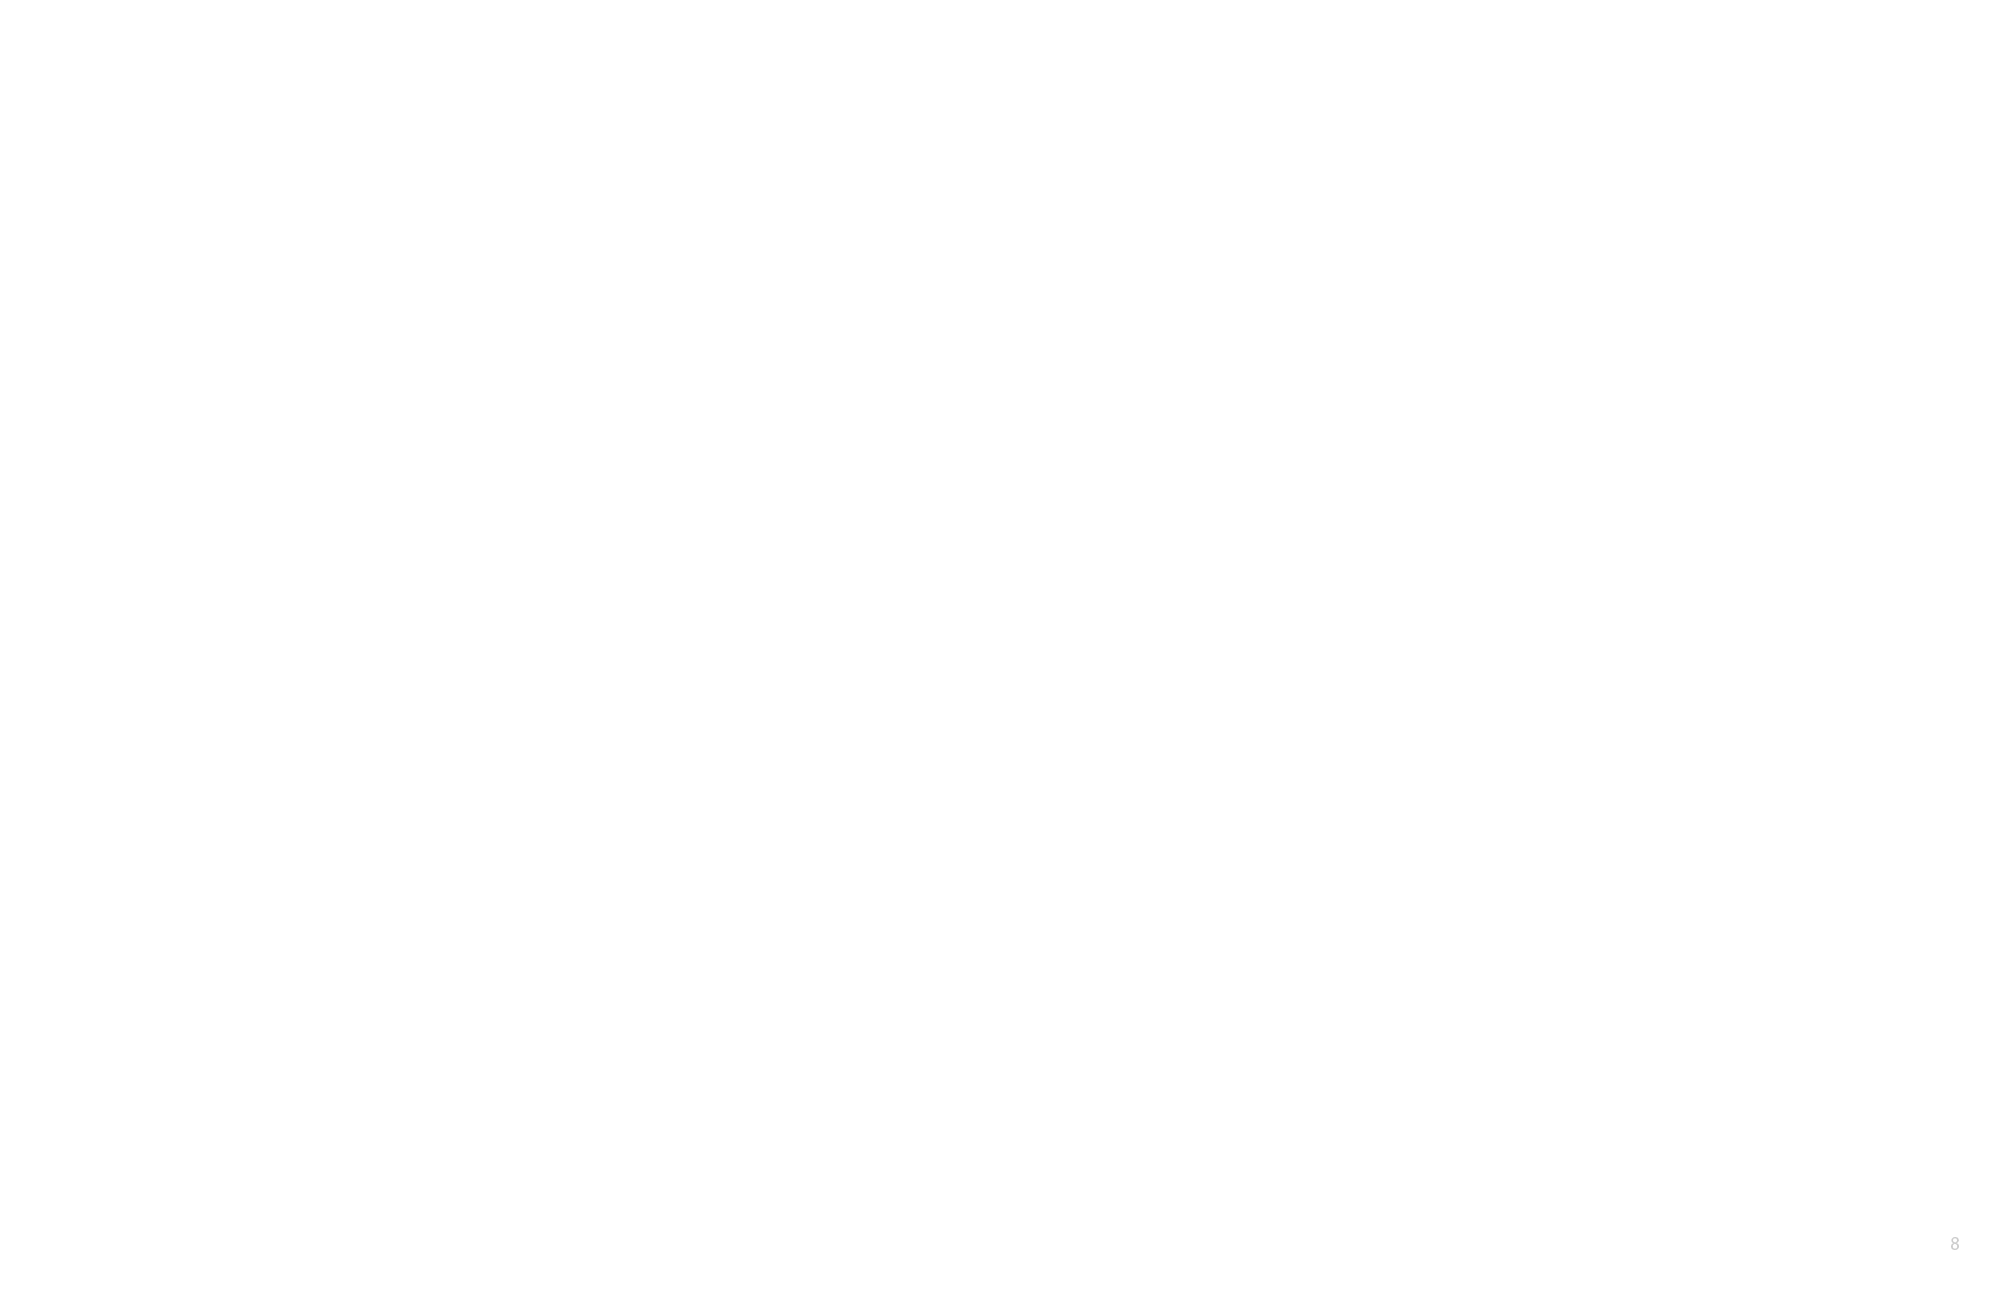 在這次的發表會中，LEBRON 12 由 Nike 官方介紹了每個配色設計概念，陸續登場的的 7 款 LEBRON 12 配色靈感都有其故事根據，這些勾勒出當代頂尖球員 LeBron James 輪廓的內容都化為圖案與文字呈現在每雙 LEBRON 12 的腳跟拉環，像是 NSRL 配色就以燒瓶還有六角圖來象徵實驗室。另外不得不提的是這個拉環本身為一緹花雙面精密織帶，由側面得知是向台灣廠商特別訂做而來，累積30年的紡織技術配合這次高標準的細節要求，歷時一整年調校才完成，是 LEBRON 12 的構成中極為細膩同時蘊藏深刻內涵的元素。